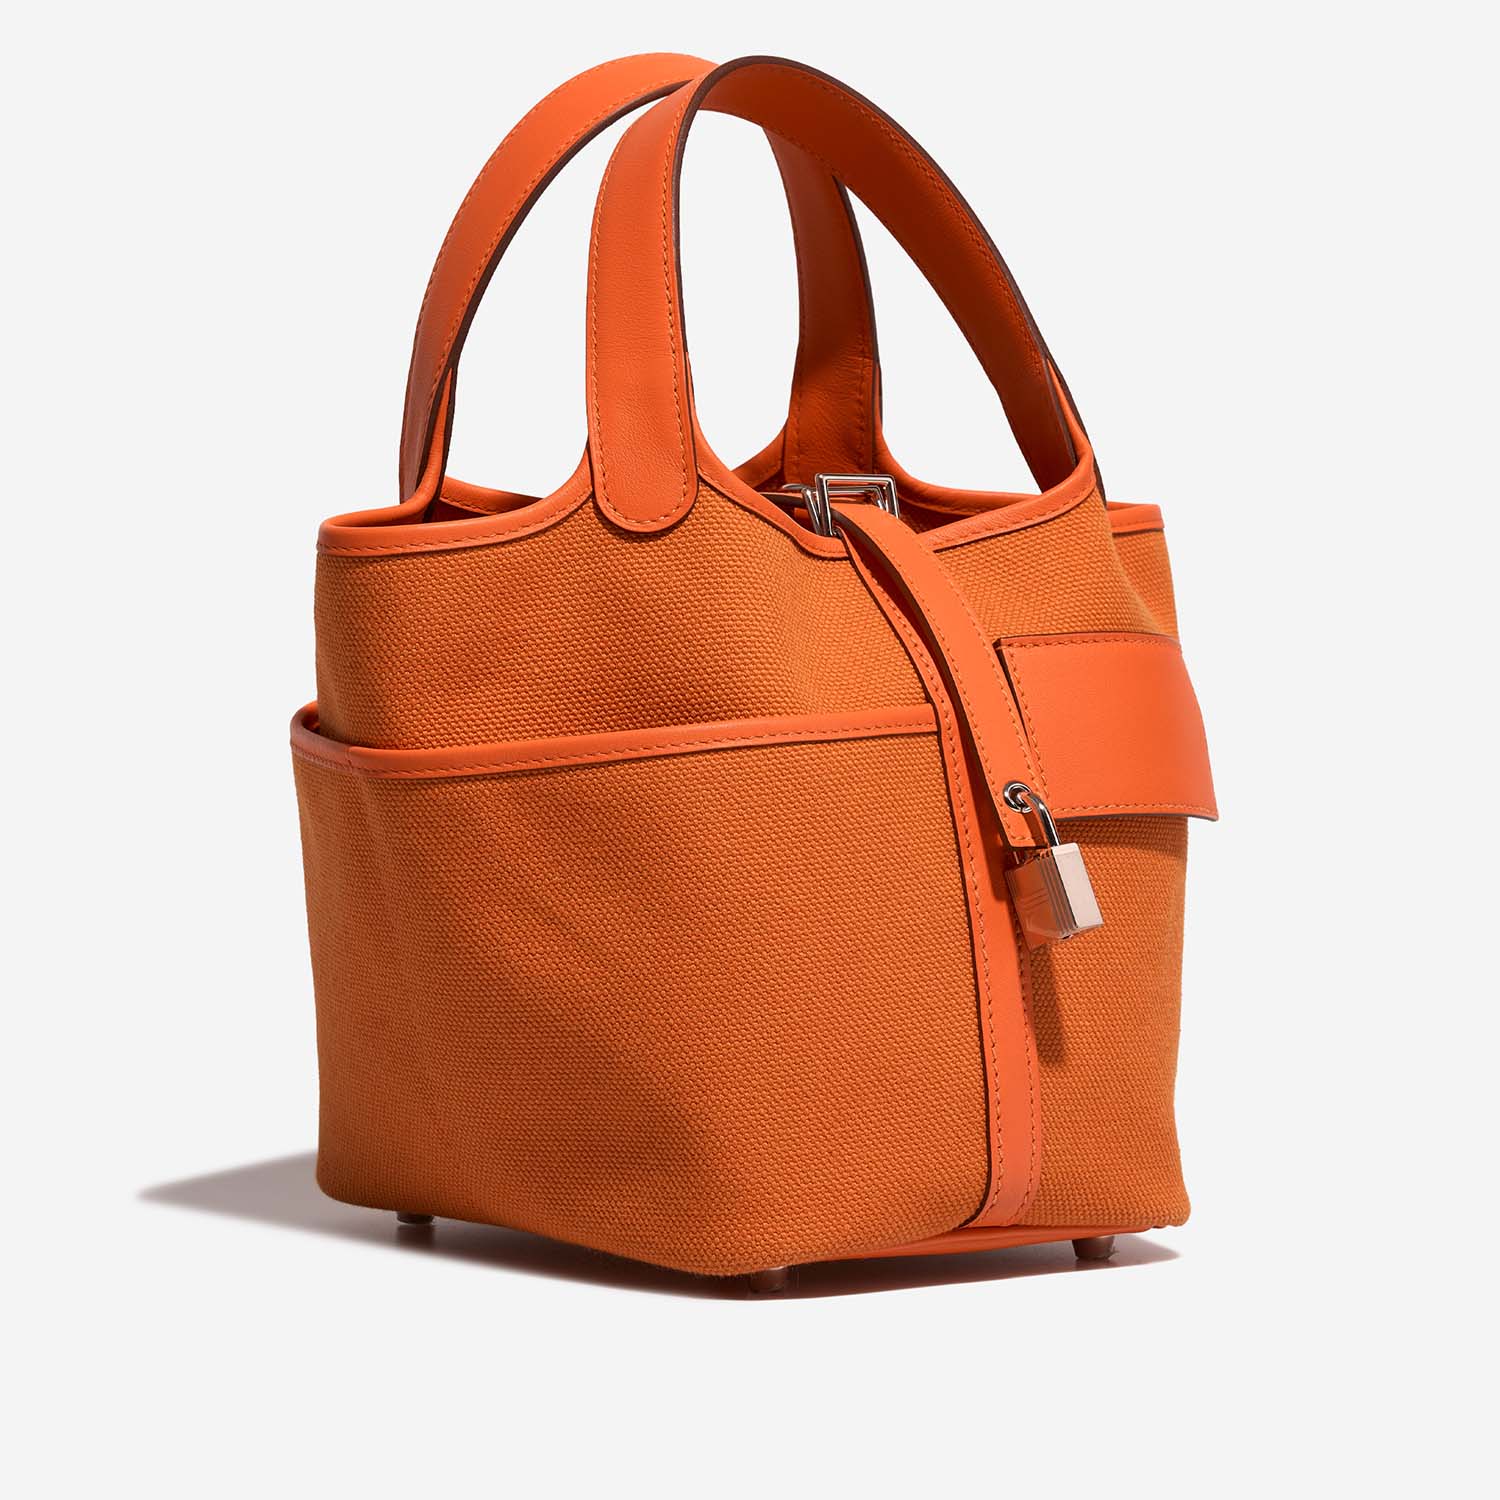 Hermès Picotin 18 OrangeMinium Side Front | Verkaufen Sie Ihre Designer-Tasche auf Saclab.com